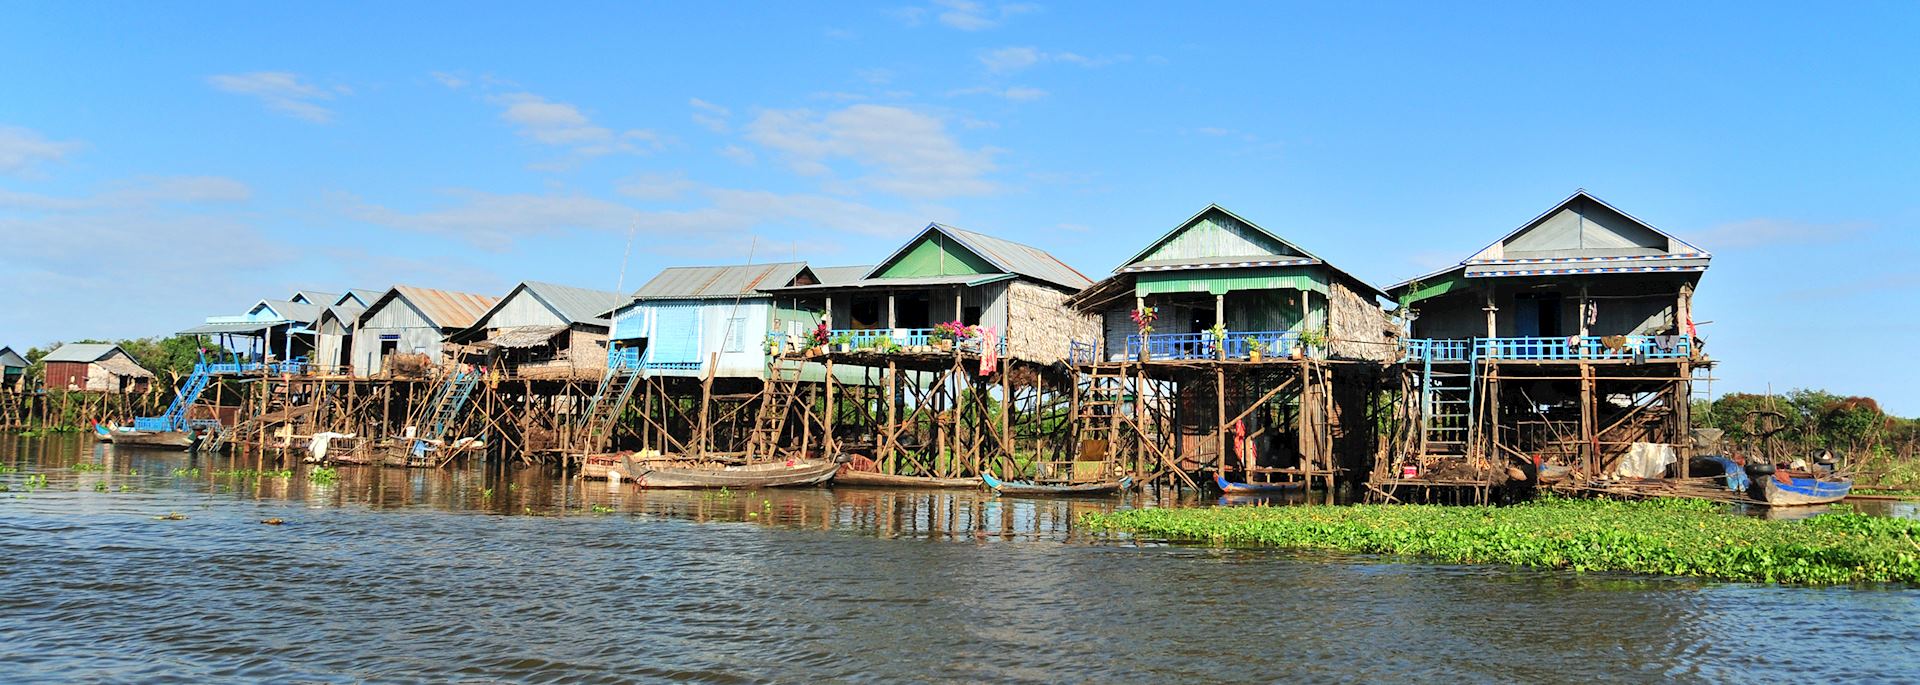 Tonle Sap, Cambodia